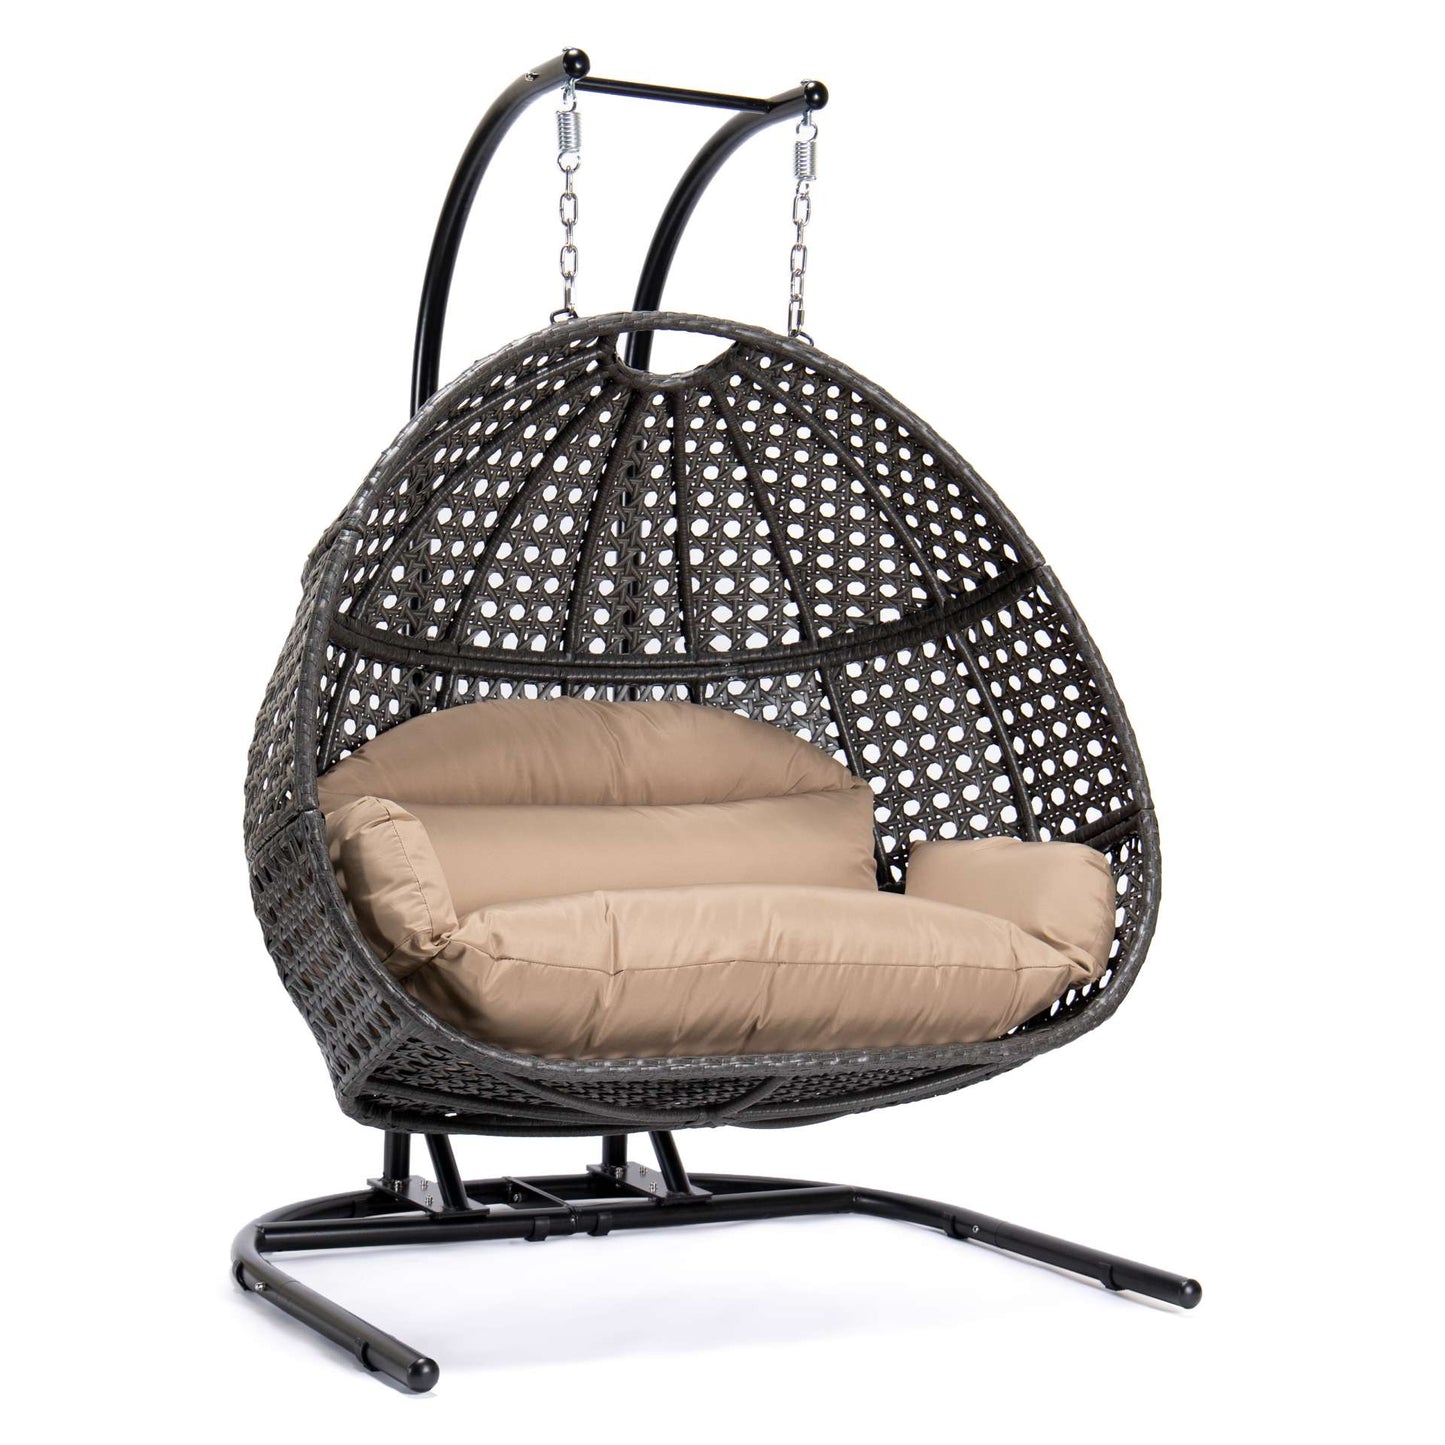 LeisureMod Wicker Hanging Double Egg Swing Chair  - EKDCH-57BR | Outdoor Porch Swings | Modishstore - 3